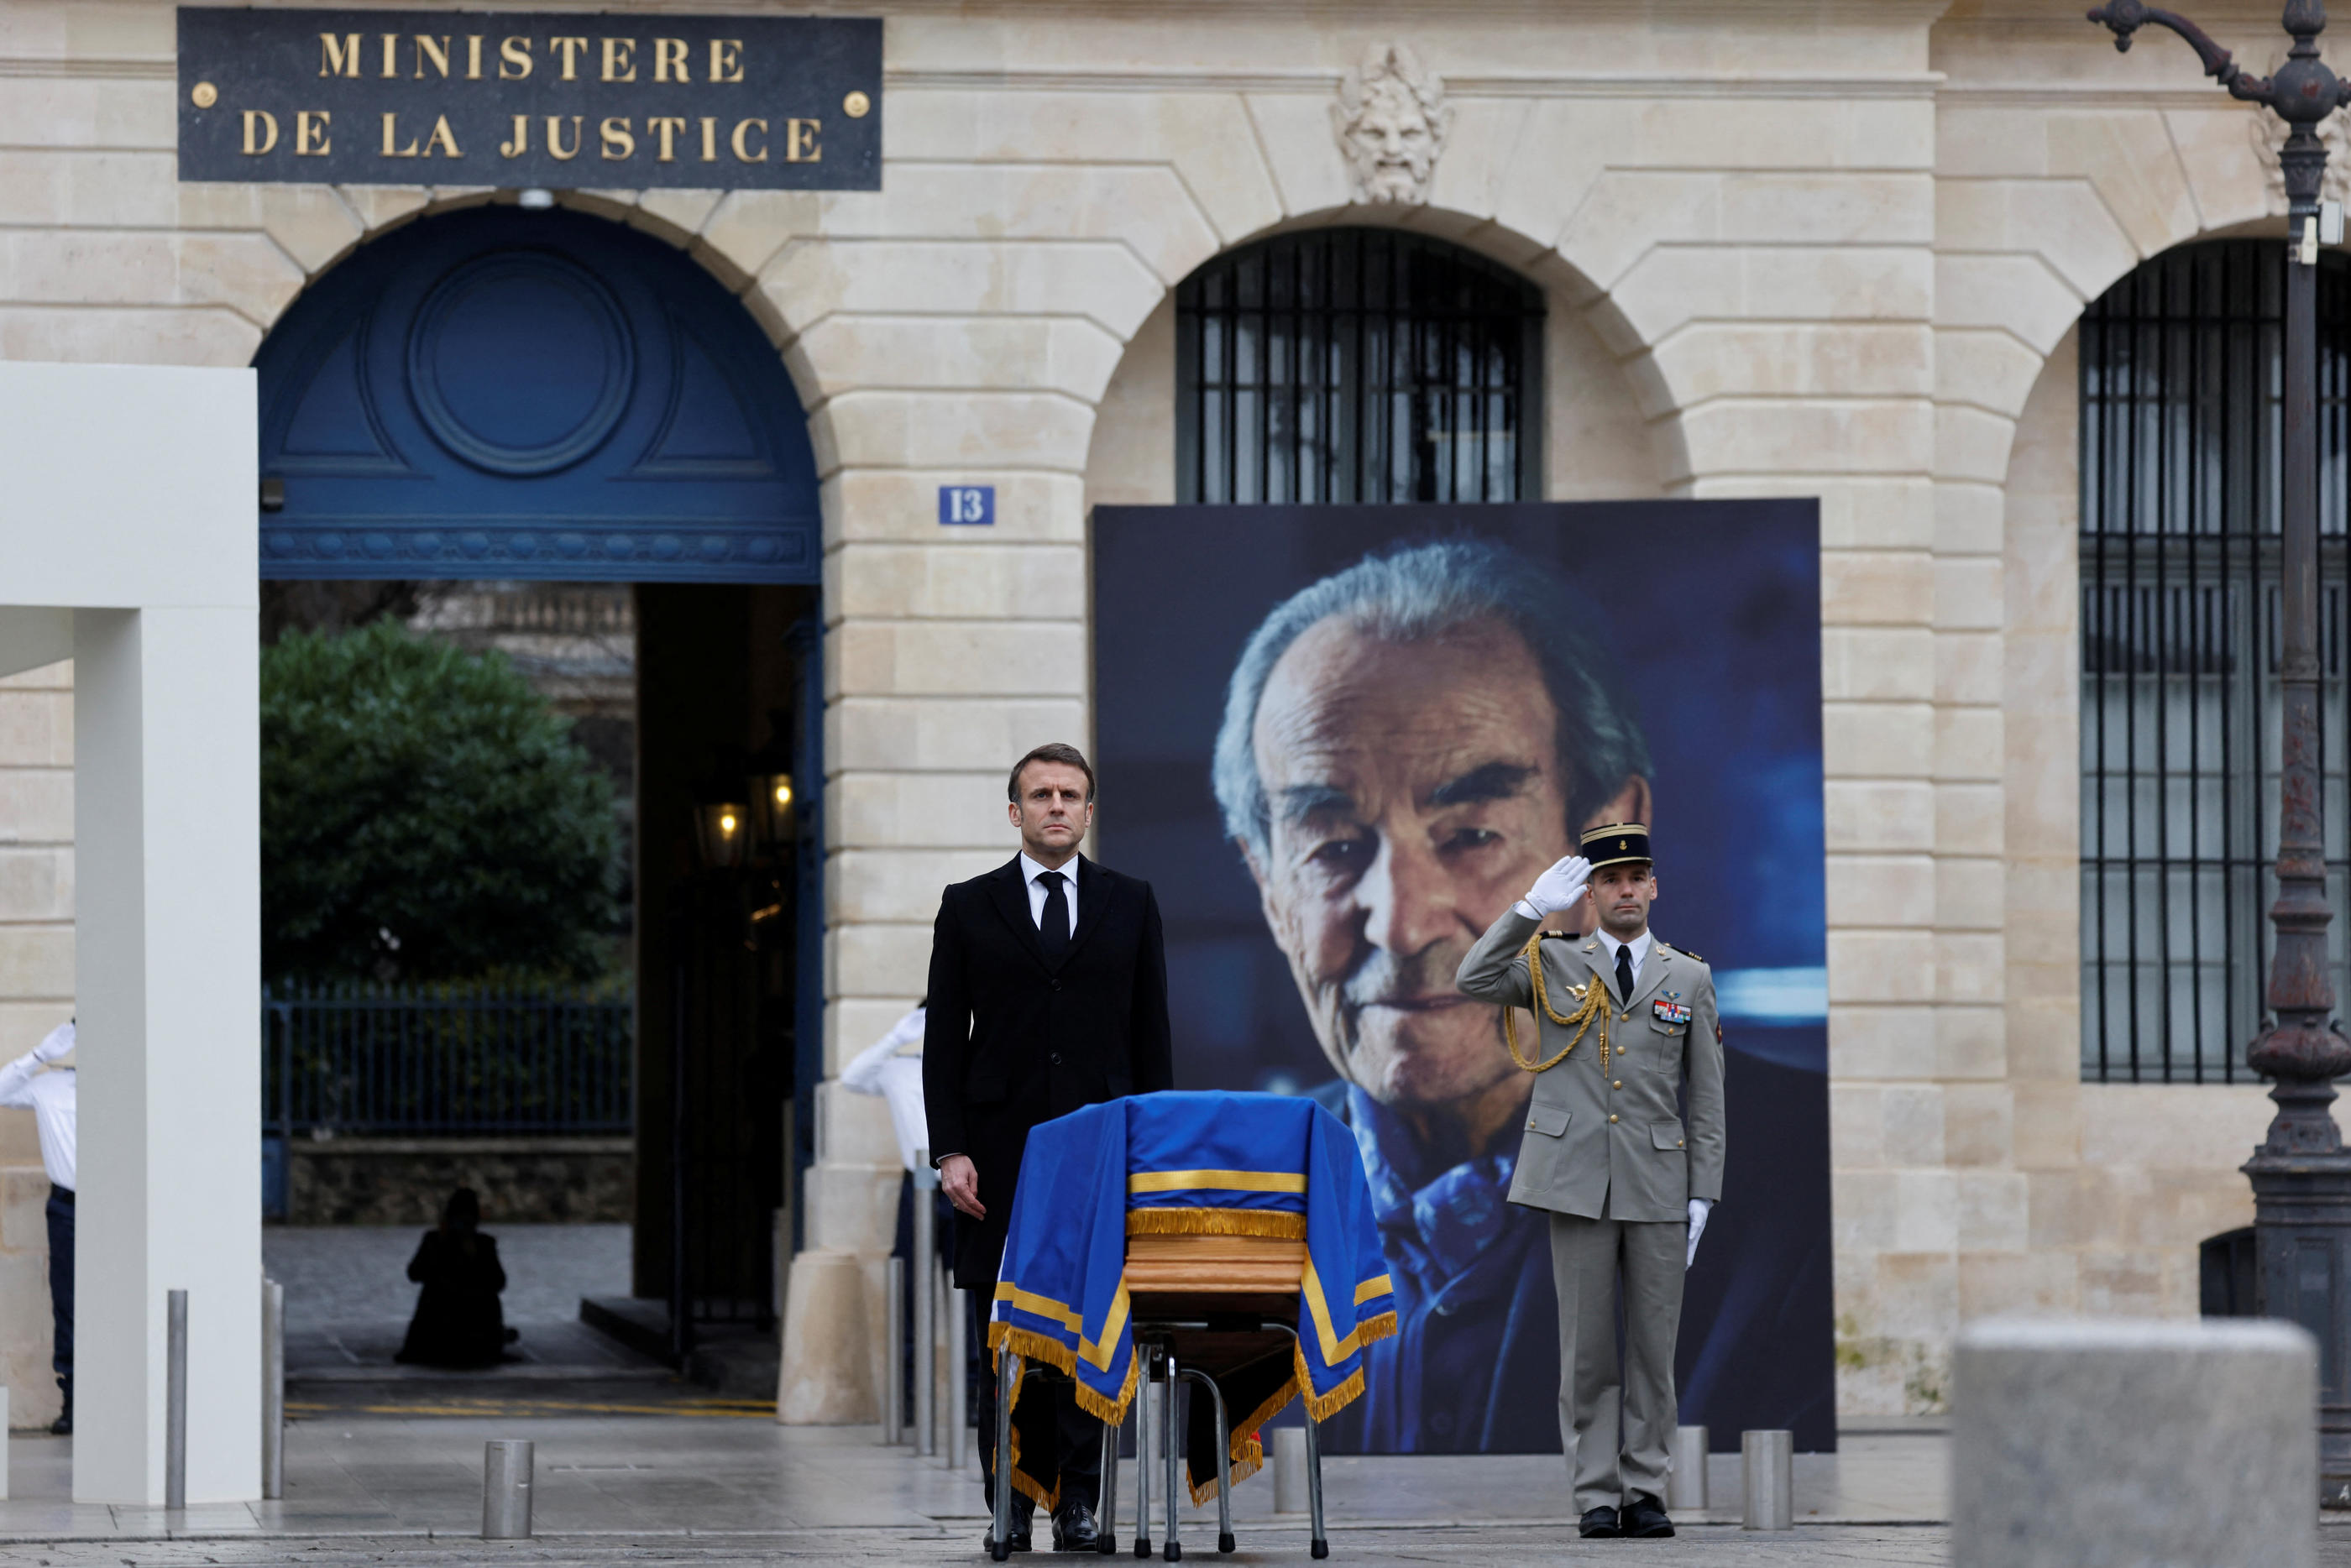 L'hommage à Robert Badinter a été rendu ce mercredi place Vendôme à Paris, sous les fenêtres du ministère de la Justice. Pool via Reuters/Ludovic Marin